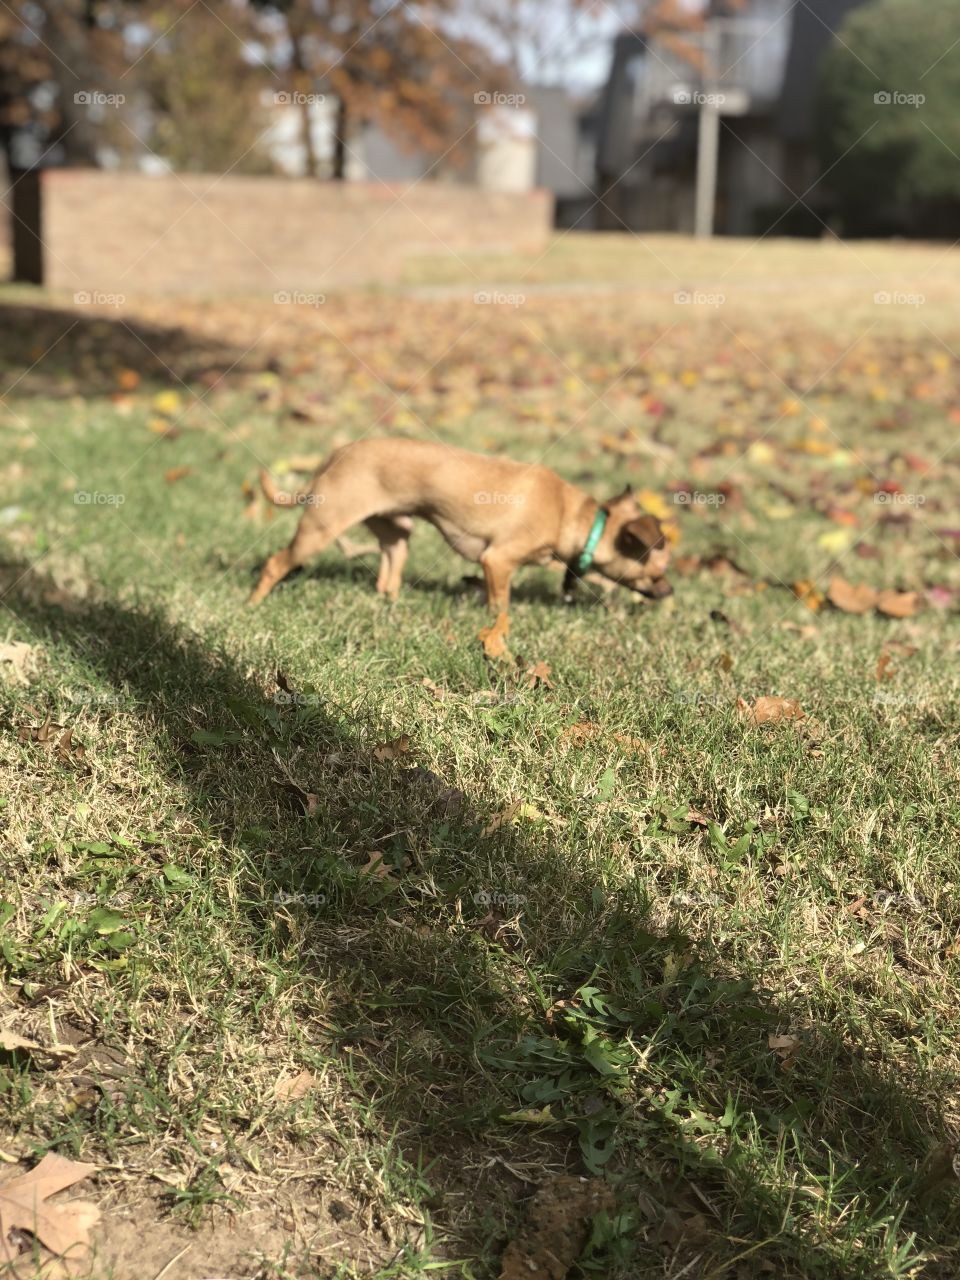 Chewalla puppy exploring his yard